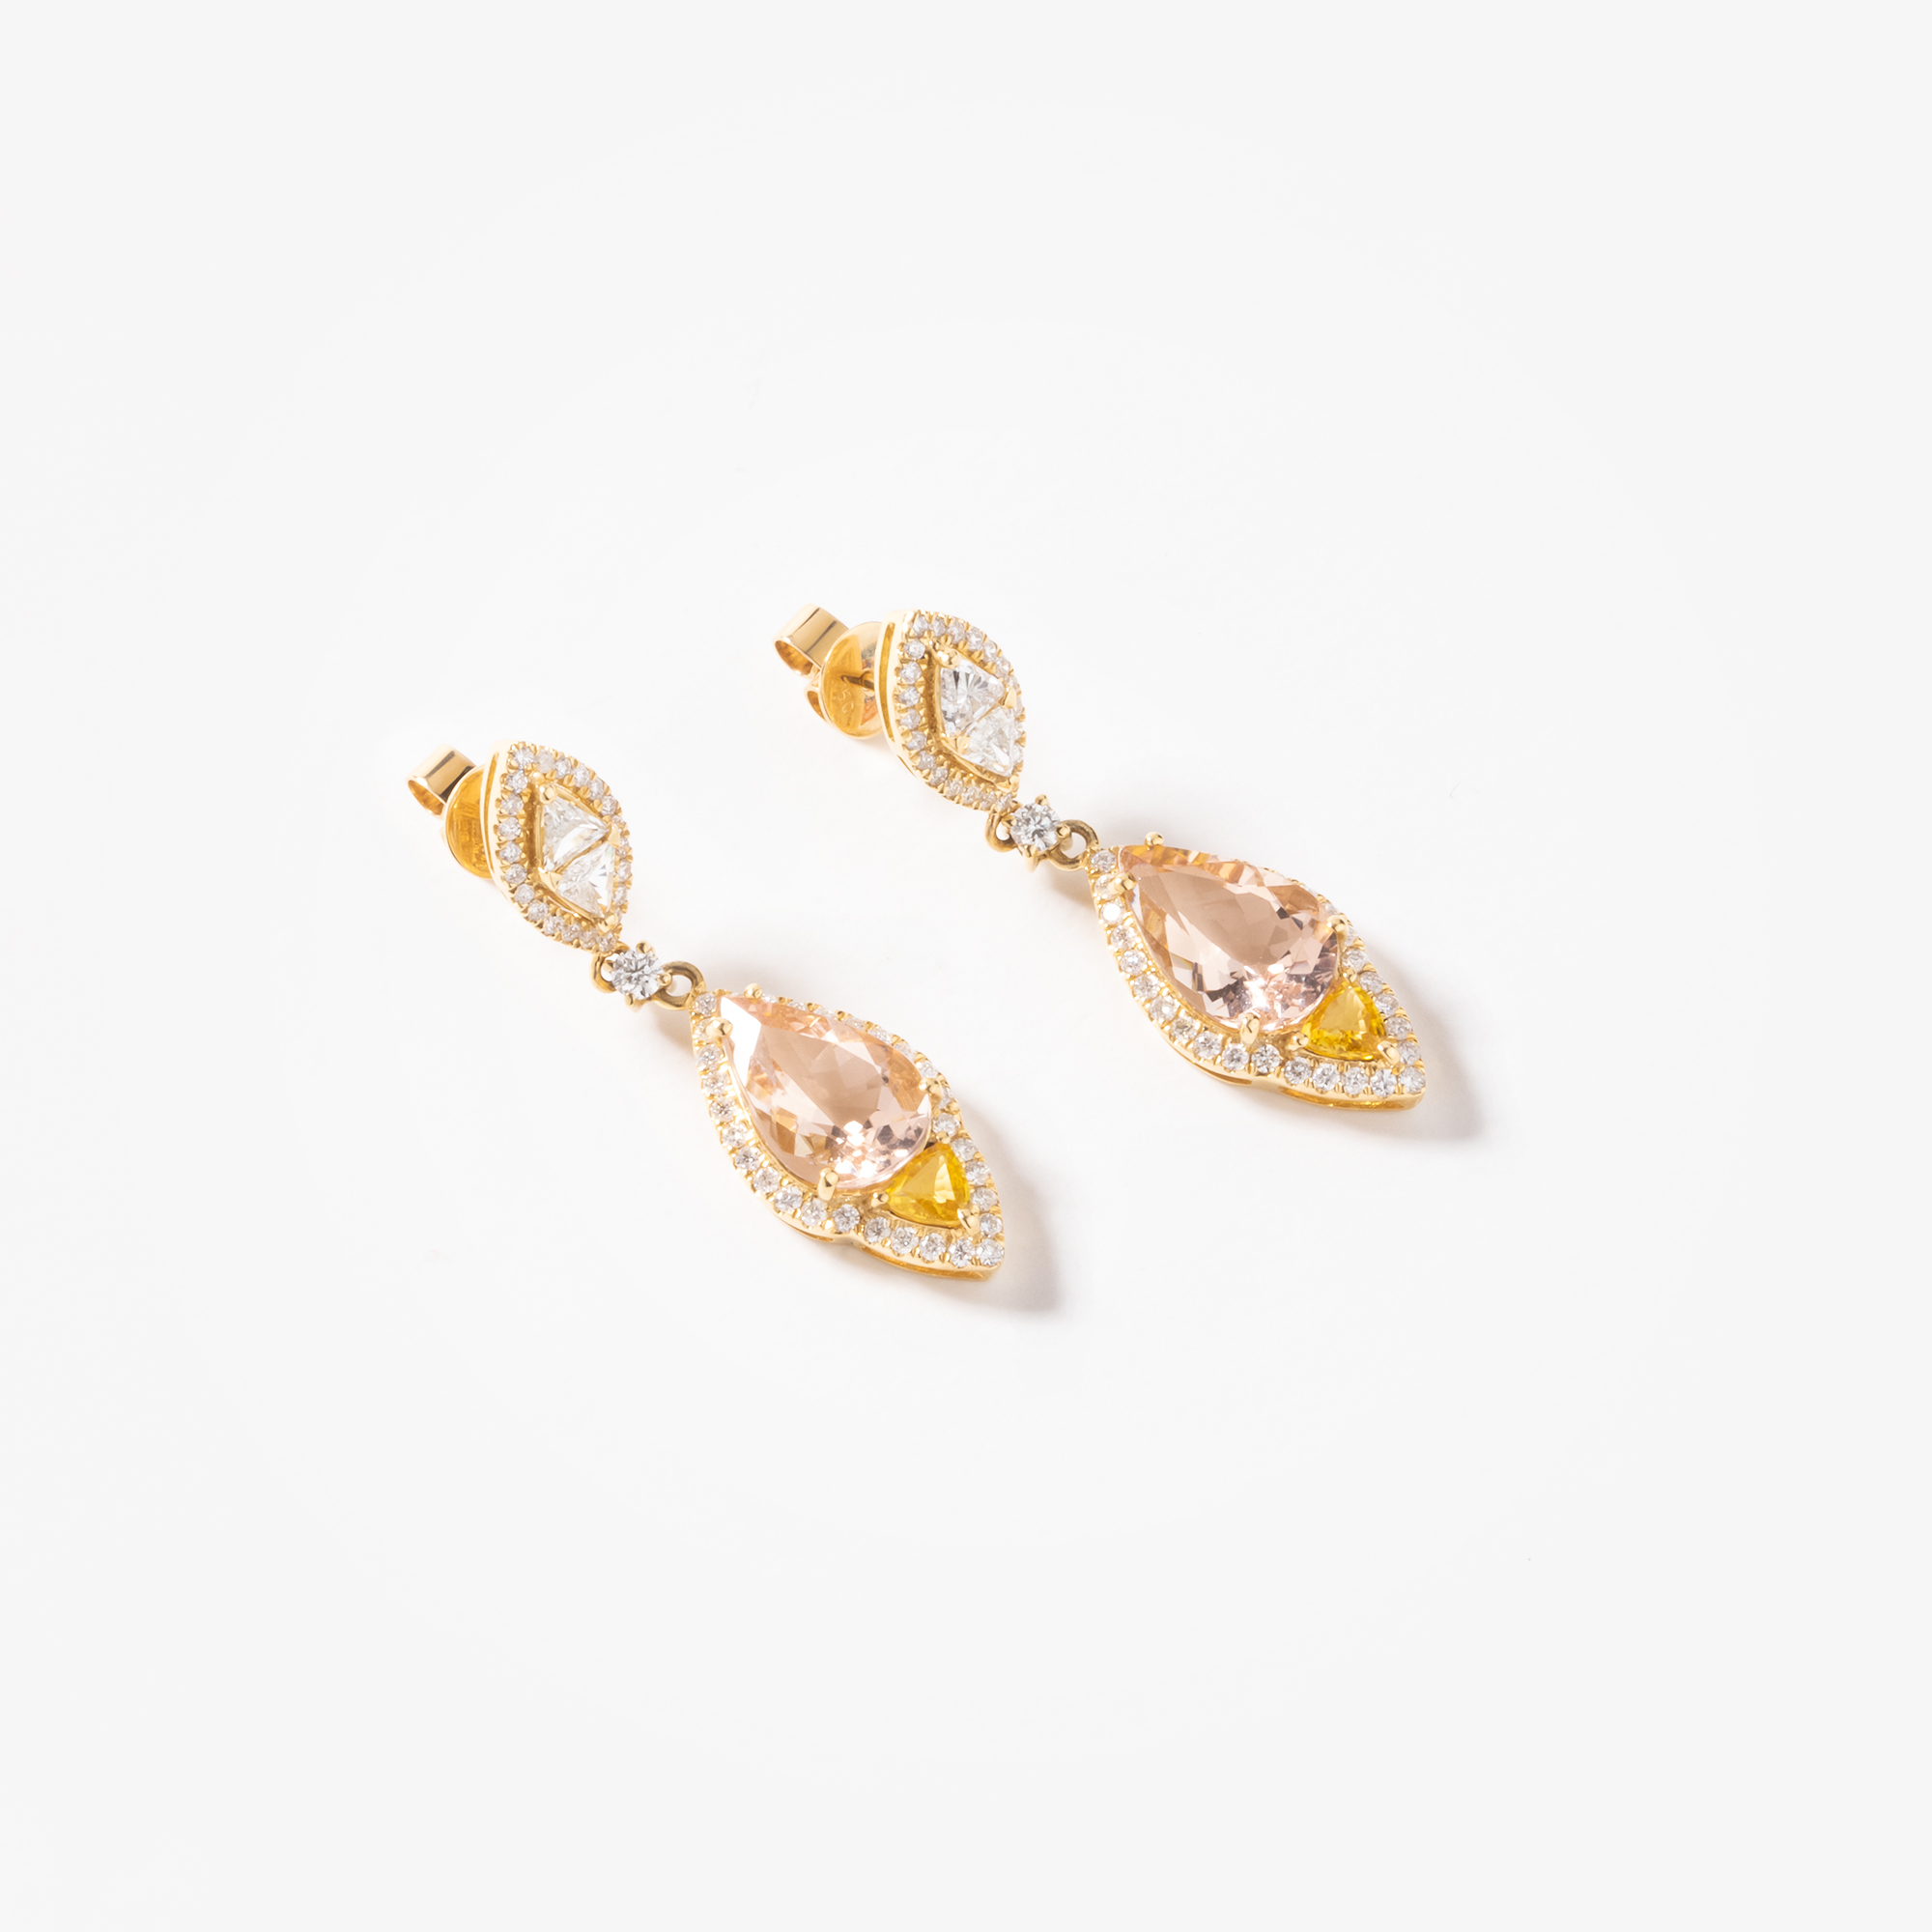 Gold Long Earrings With Morganite And Diamonds Venetia Vildiridis E Shop